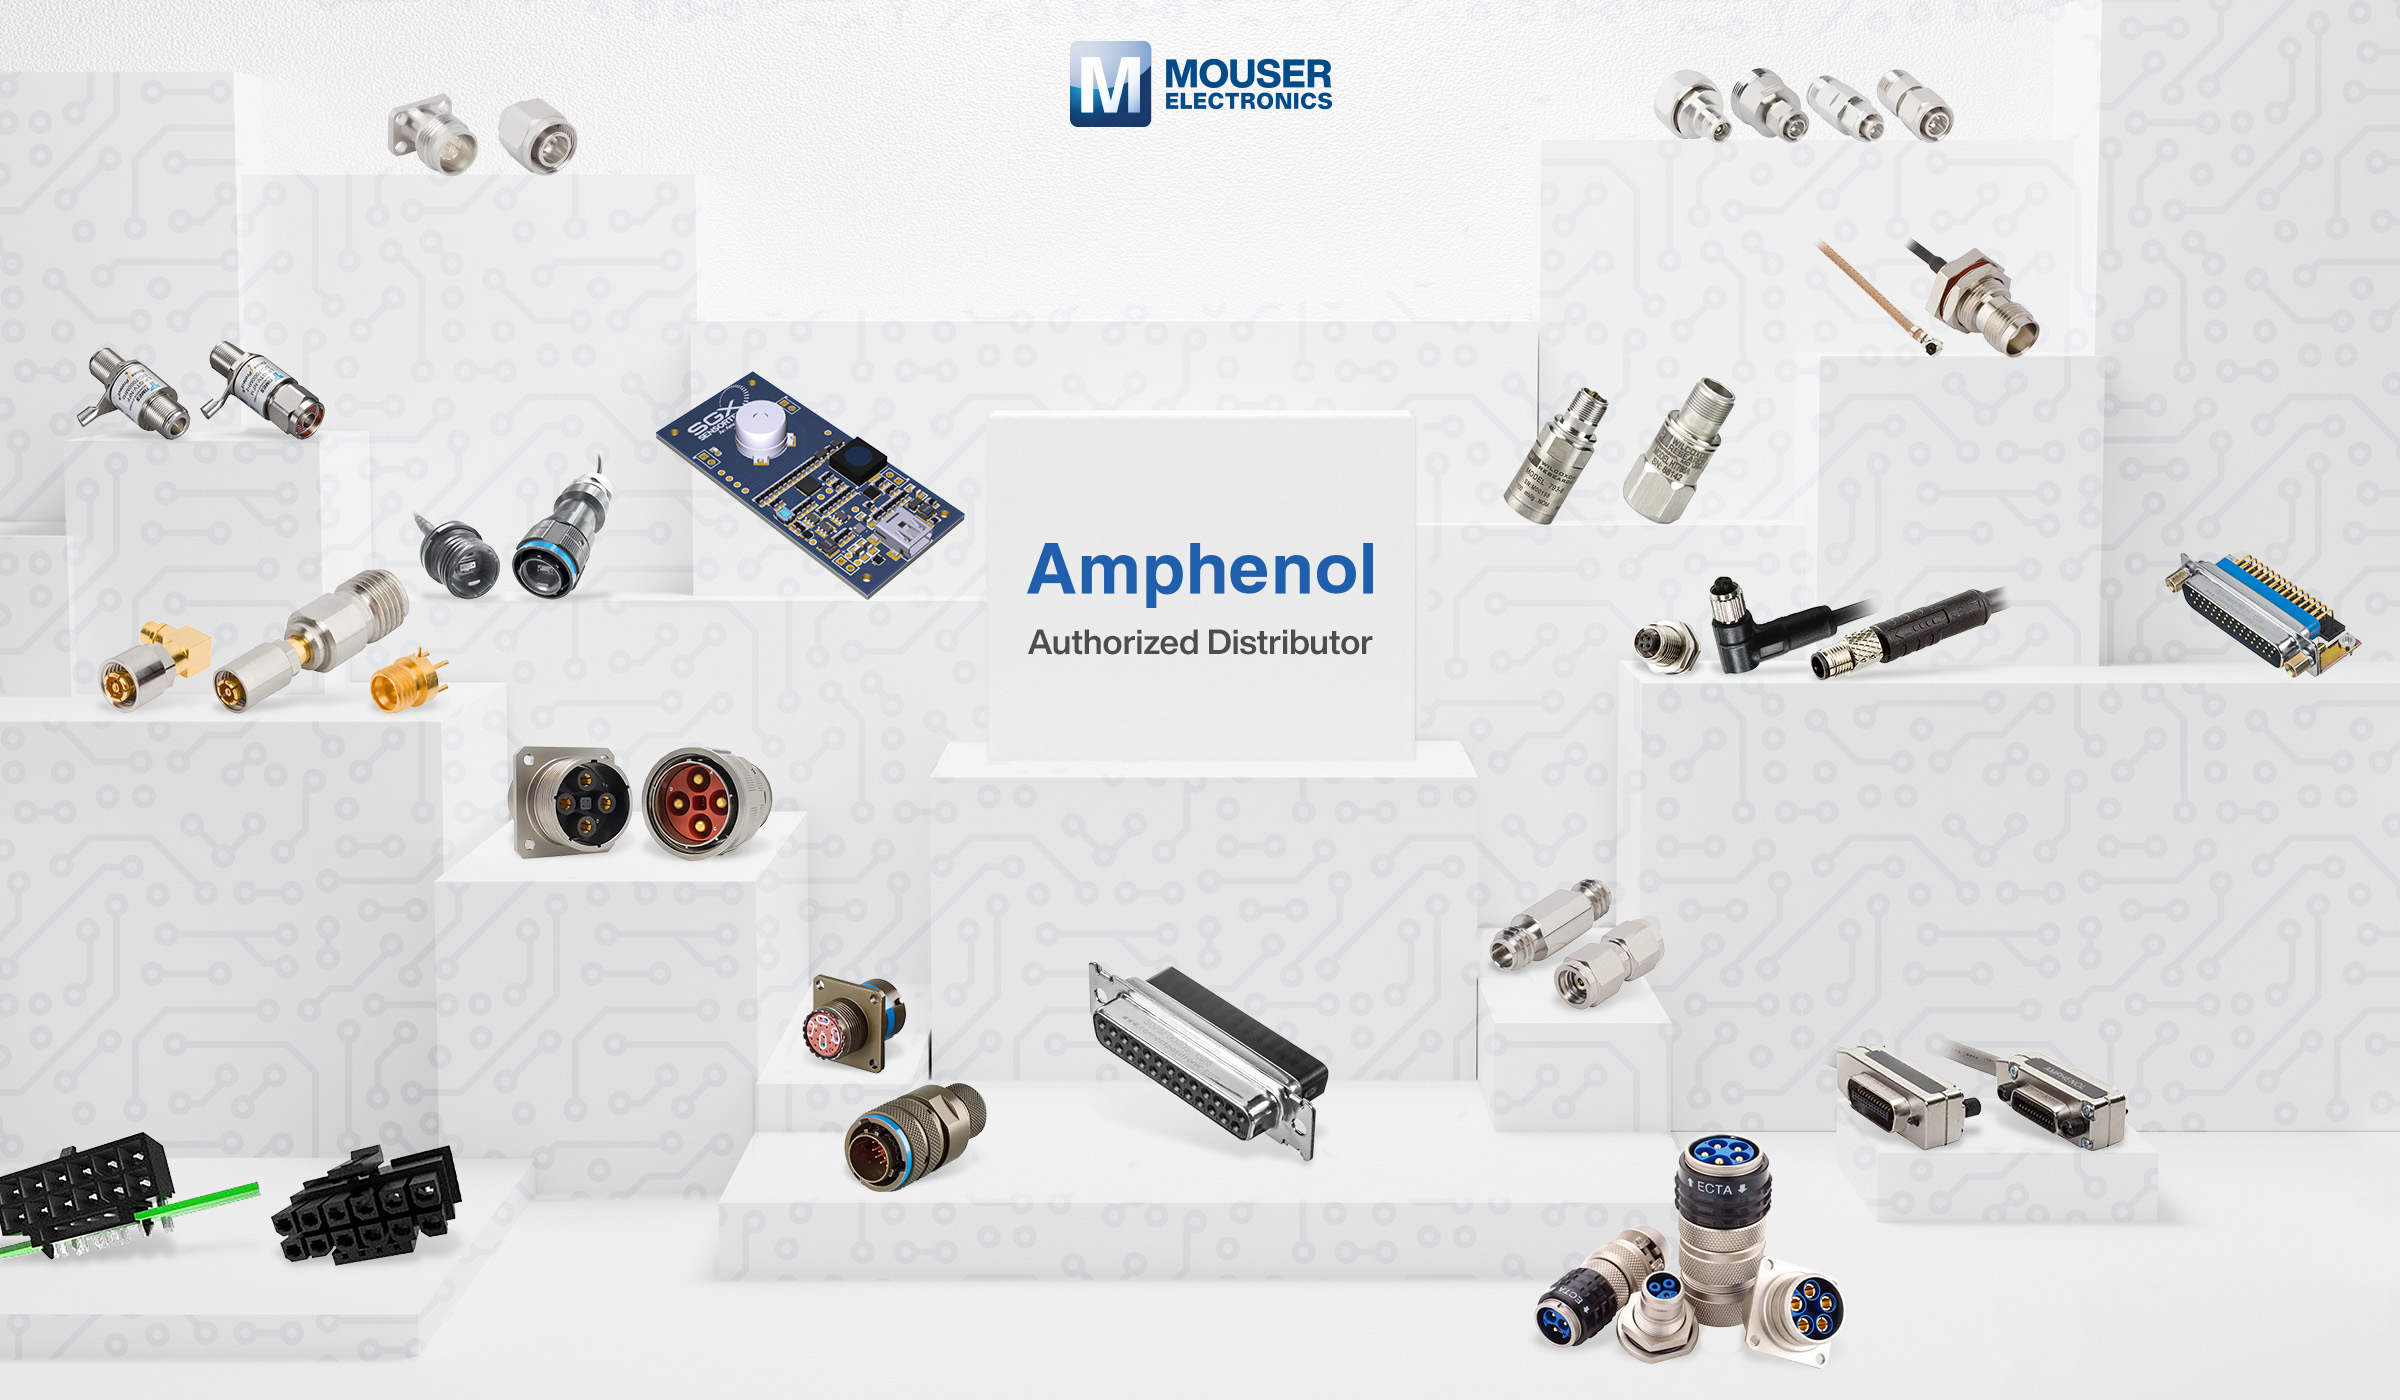 貿澤電子授權分銷超49000種Amphenol產品